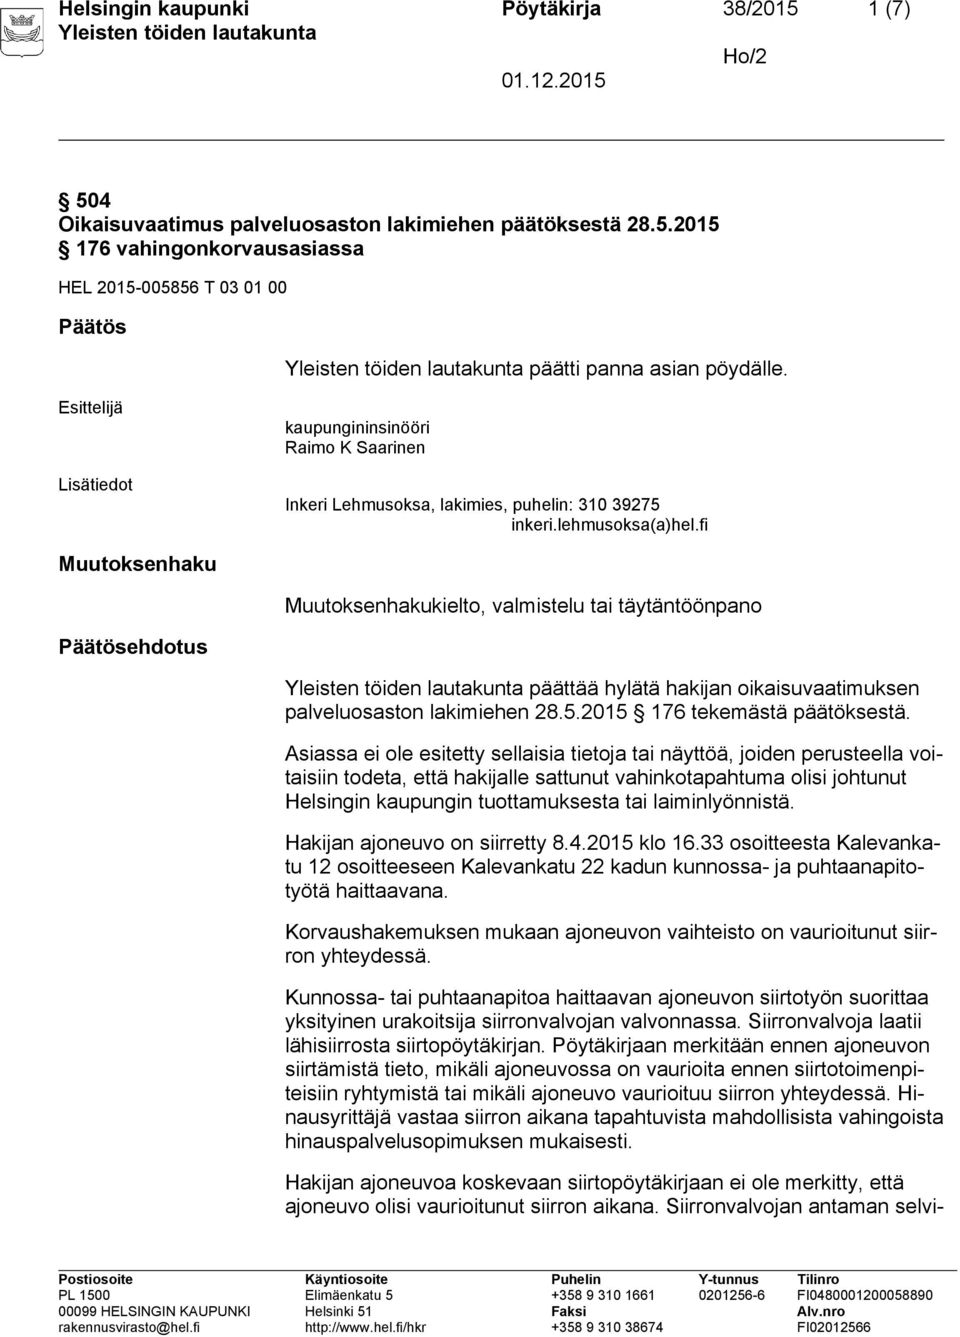 fi Muutoksenhaku Muutoksenhakukielto, valmistelu tai täytäntöönpano Päätösehdotus päättää hylätä hakijan oikaisuvaatimuksen palveluosaston lakimiehen 28.5.2015 176 tekemästä päätöksestä.